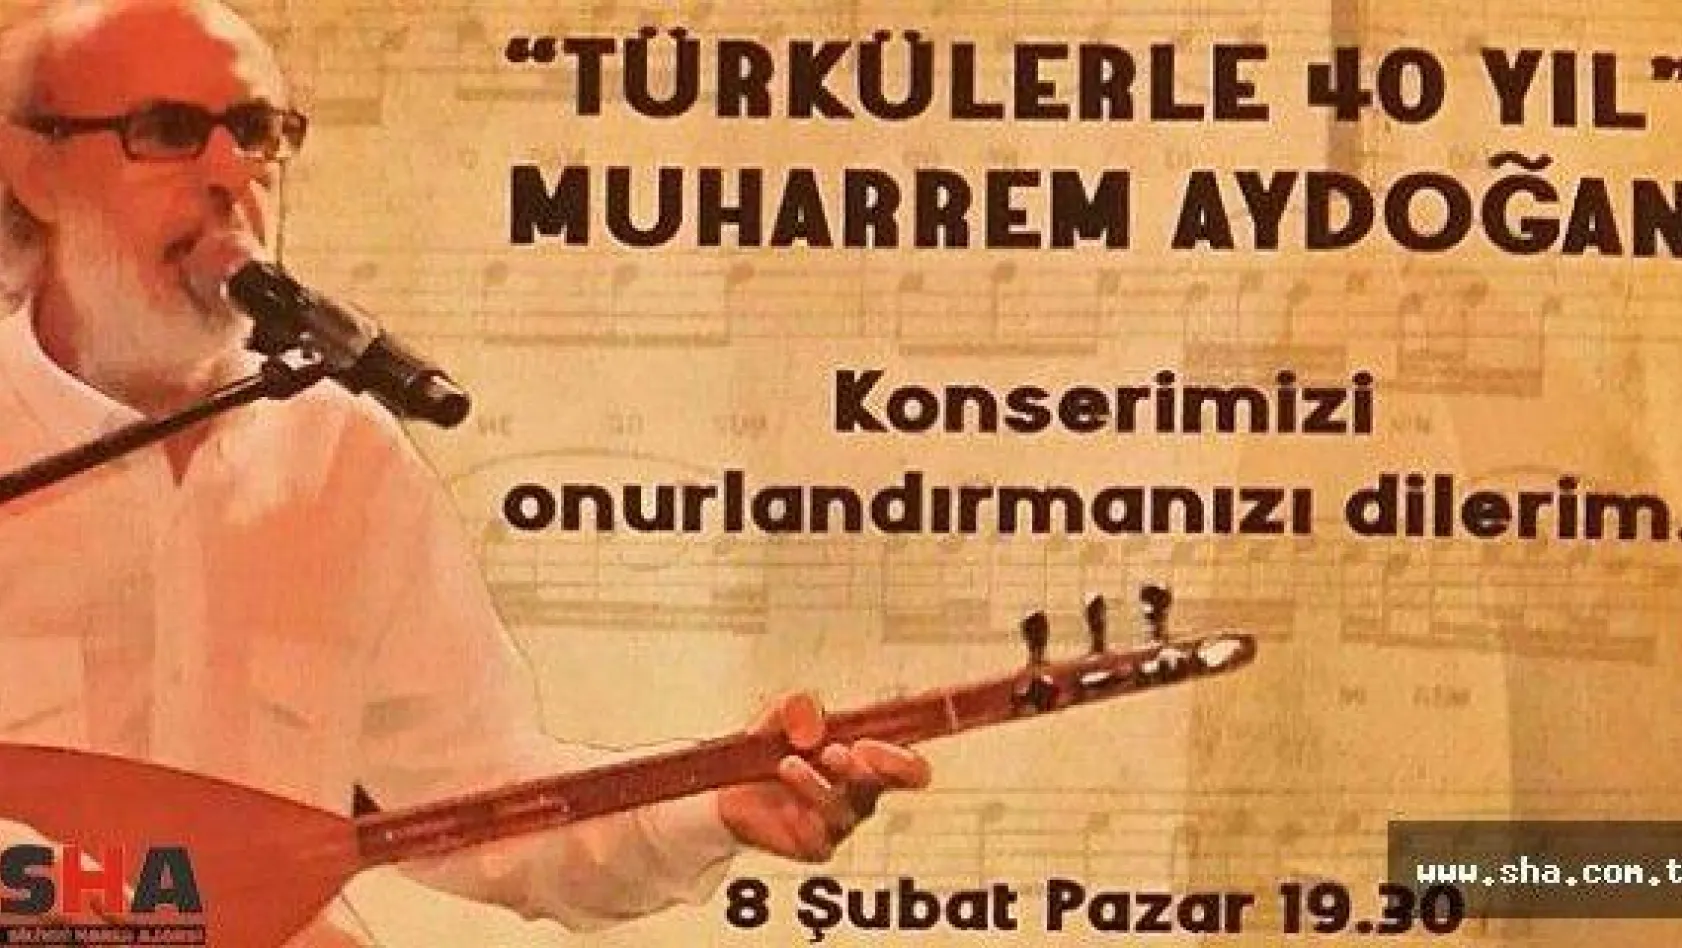 Aydoğan, 40.Sanat yılını konserle taçlandırıyor